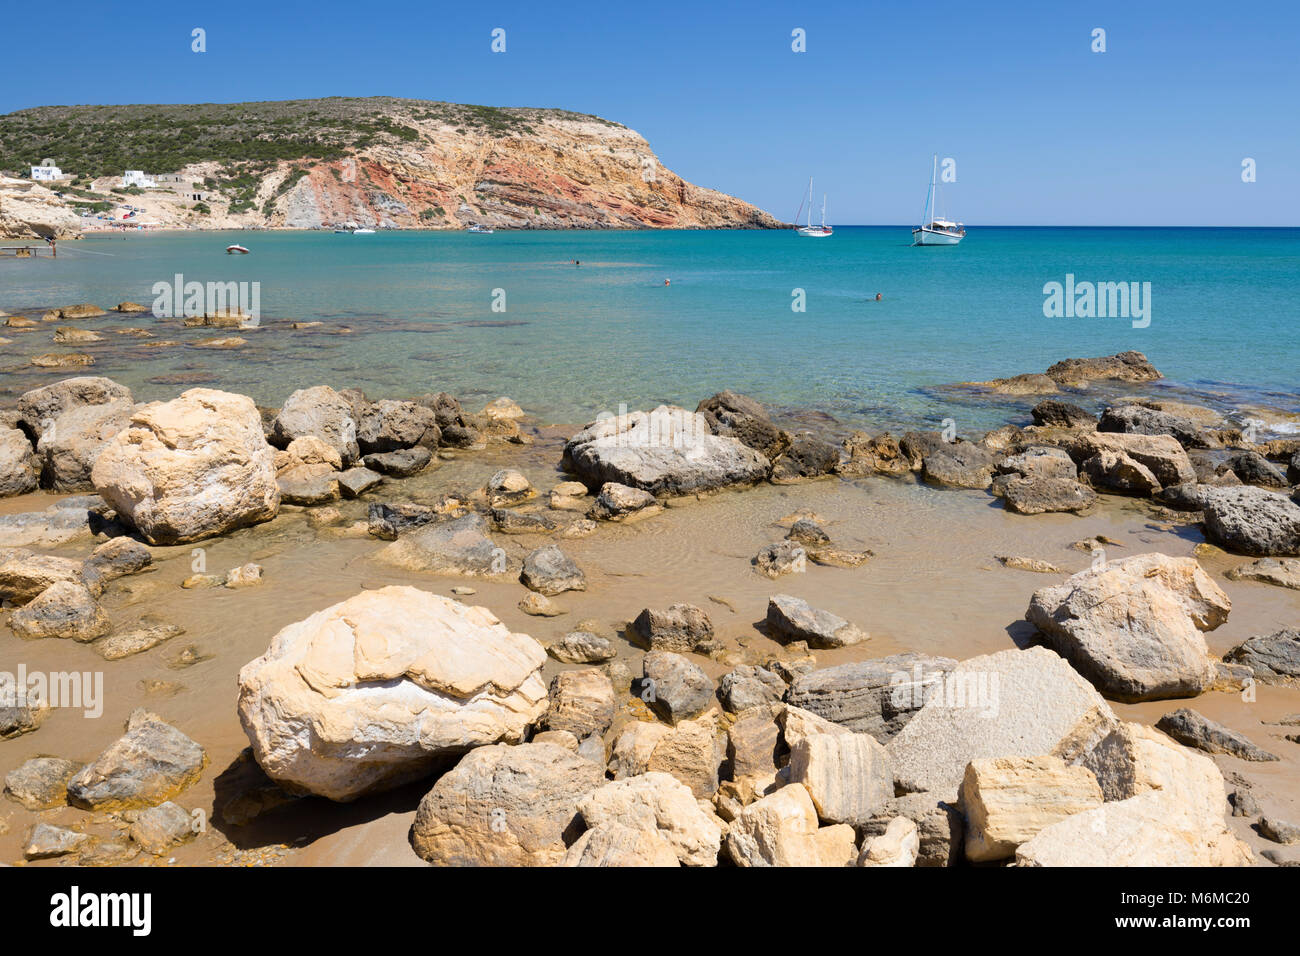 Rochers et mer turquoise avec des yachts à Provatas beach, Milos, Cyclades, Mer Égée, îles grecques, Grèce, Europe Banque D'Images